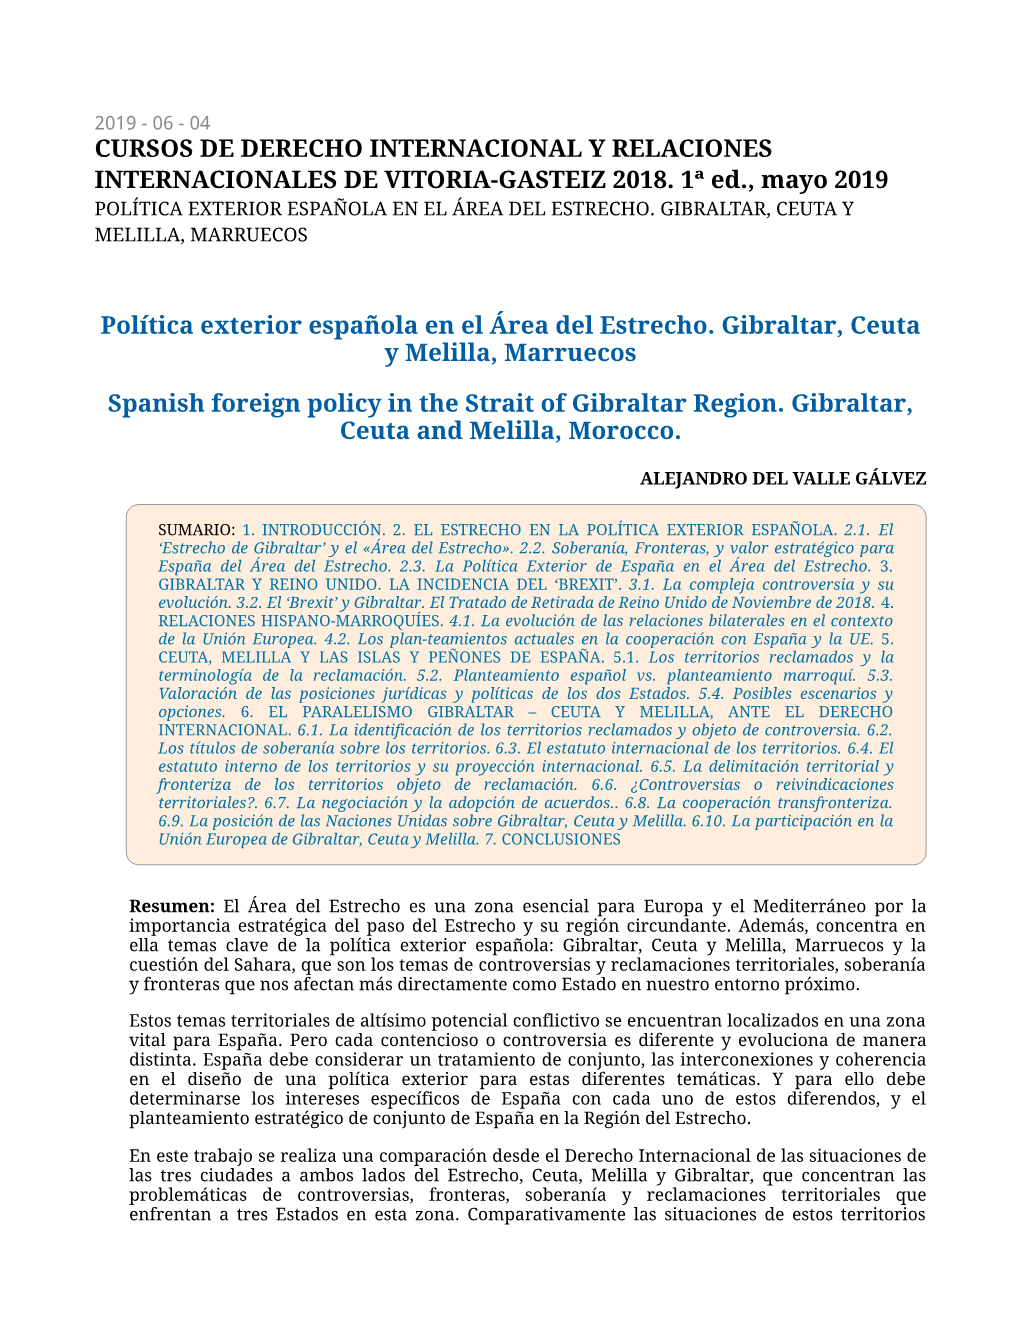 Política Exterior Española En El Área Del Estrecho. Gibraltar, Ceuta Y Melilla, Marruecos